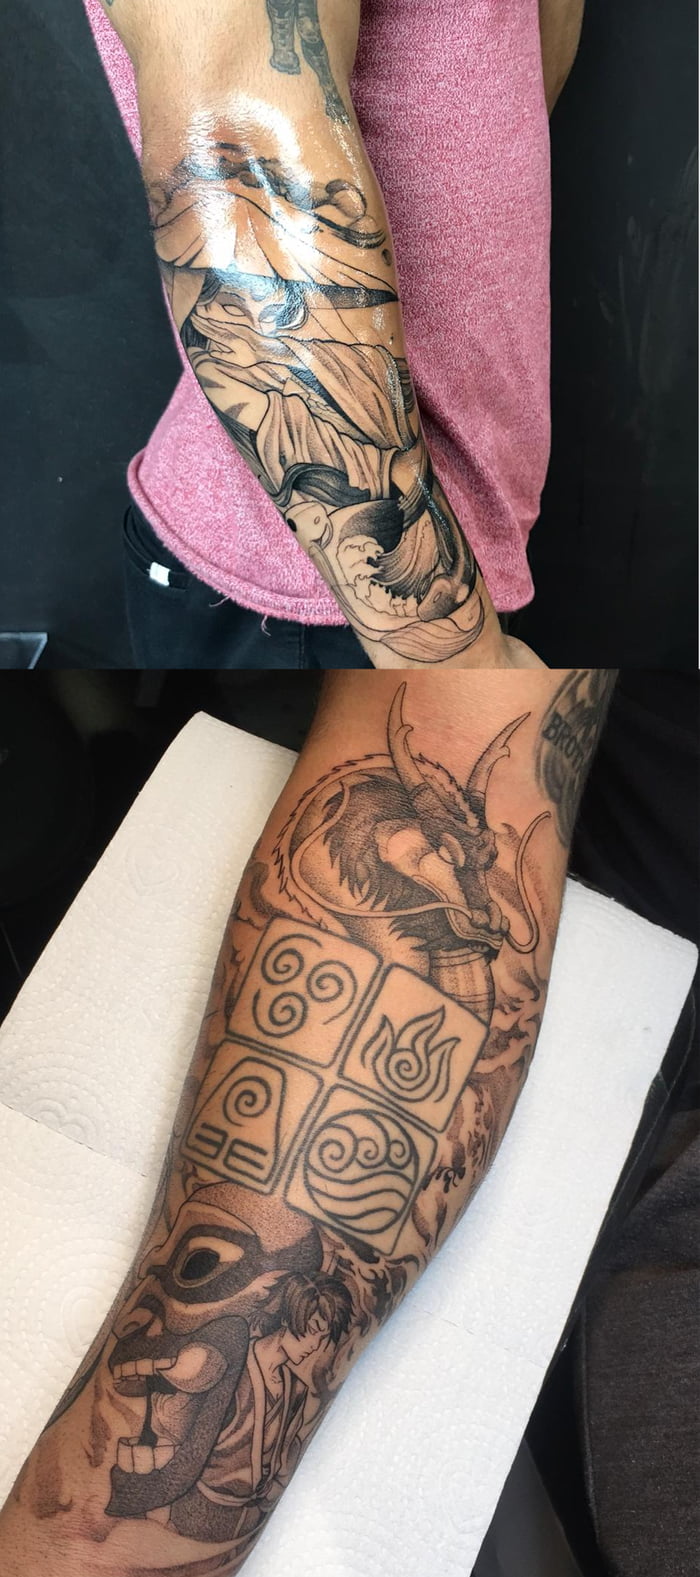 Joseph GordonLevitt  Show me your tattoos here httpbitly2LUqpRh   Facebook